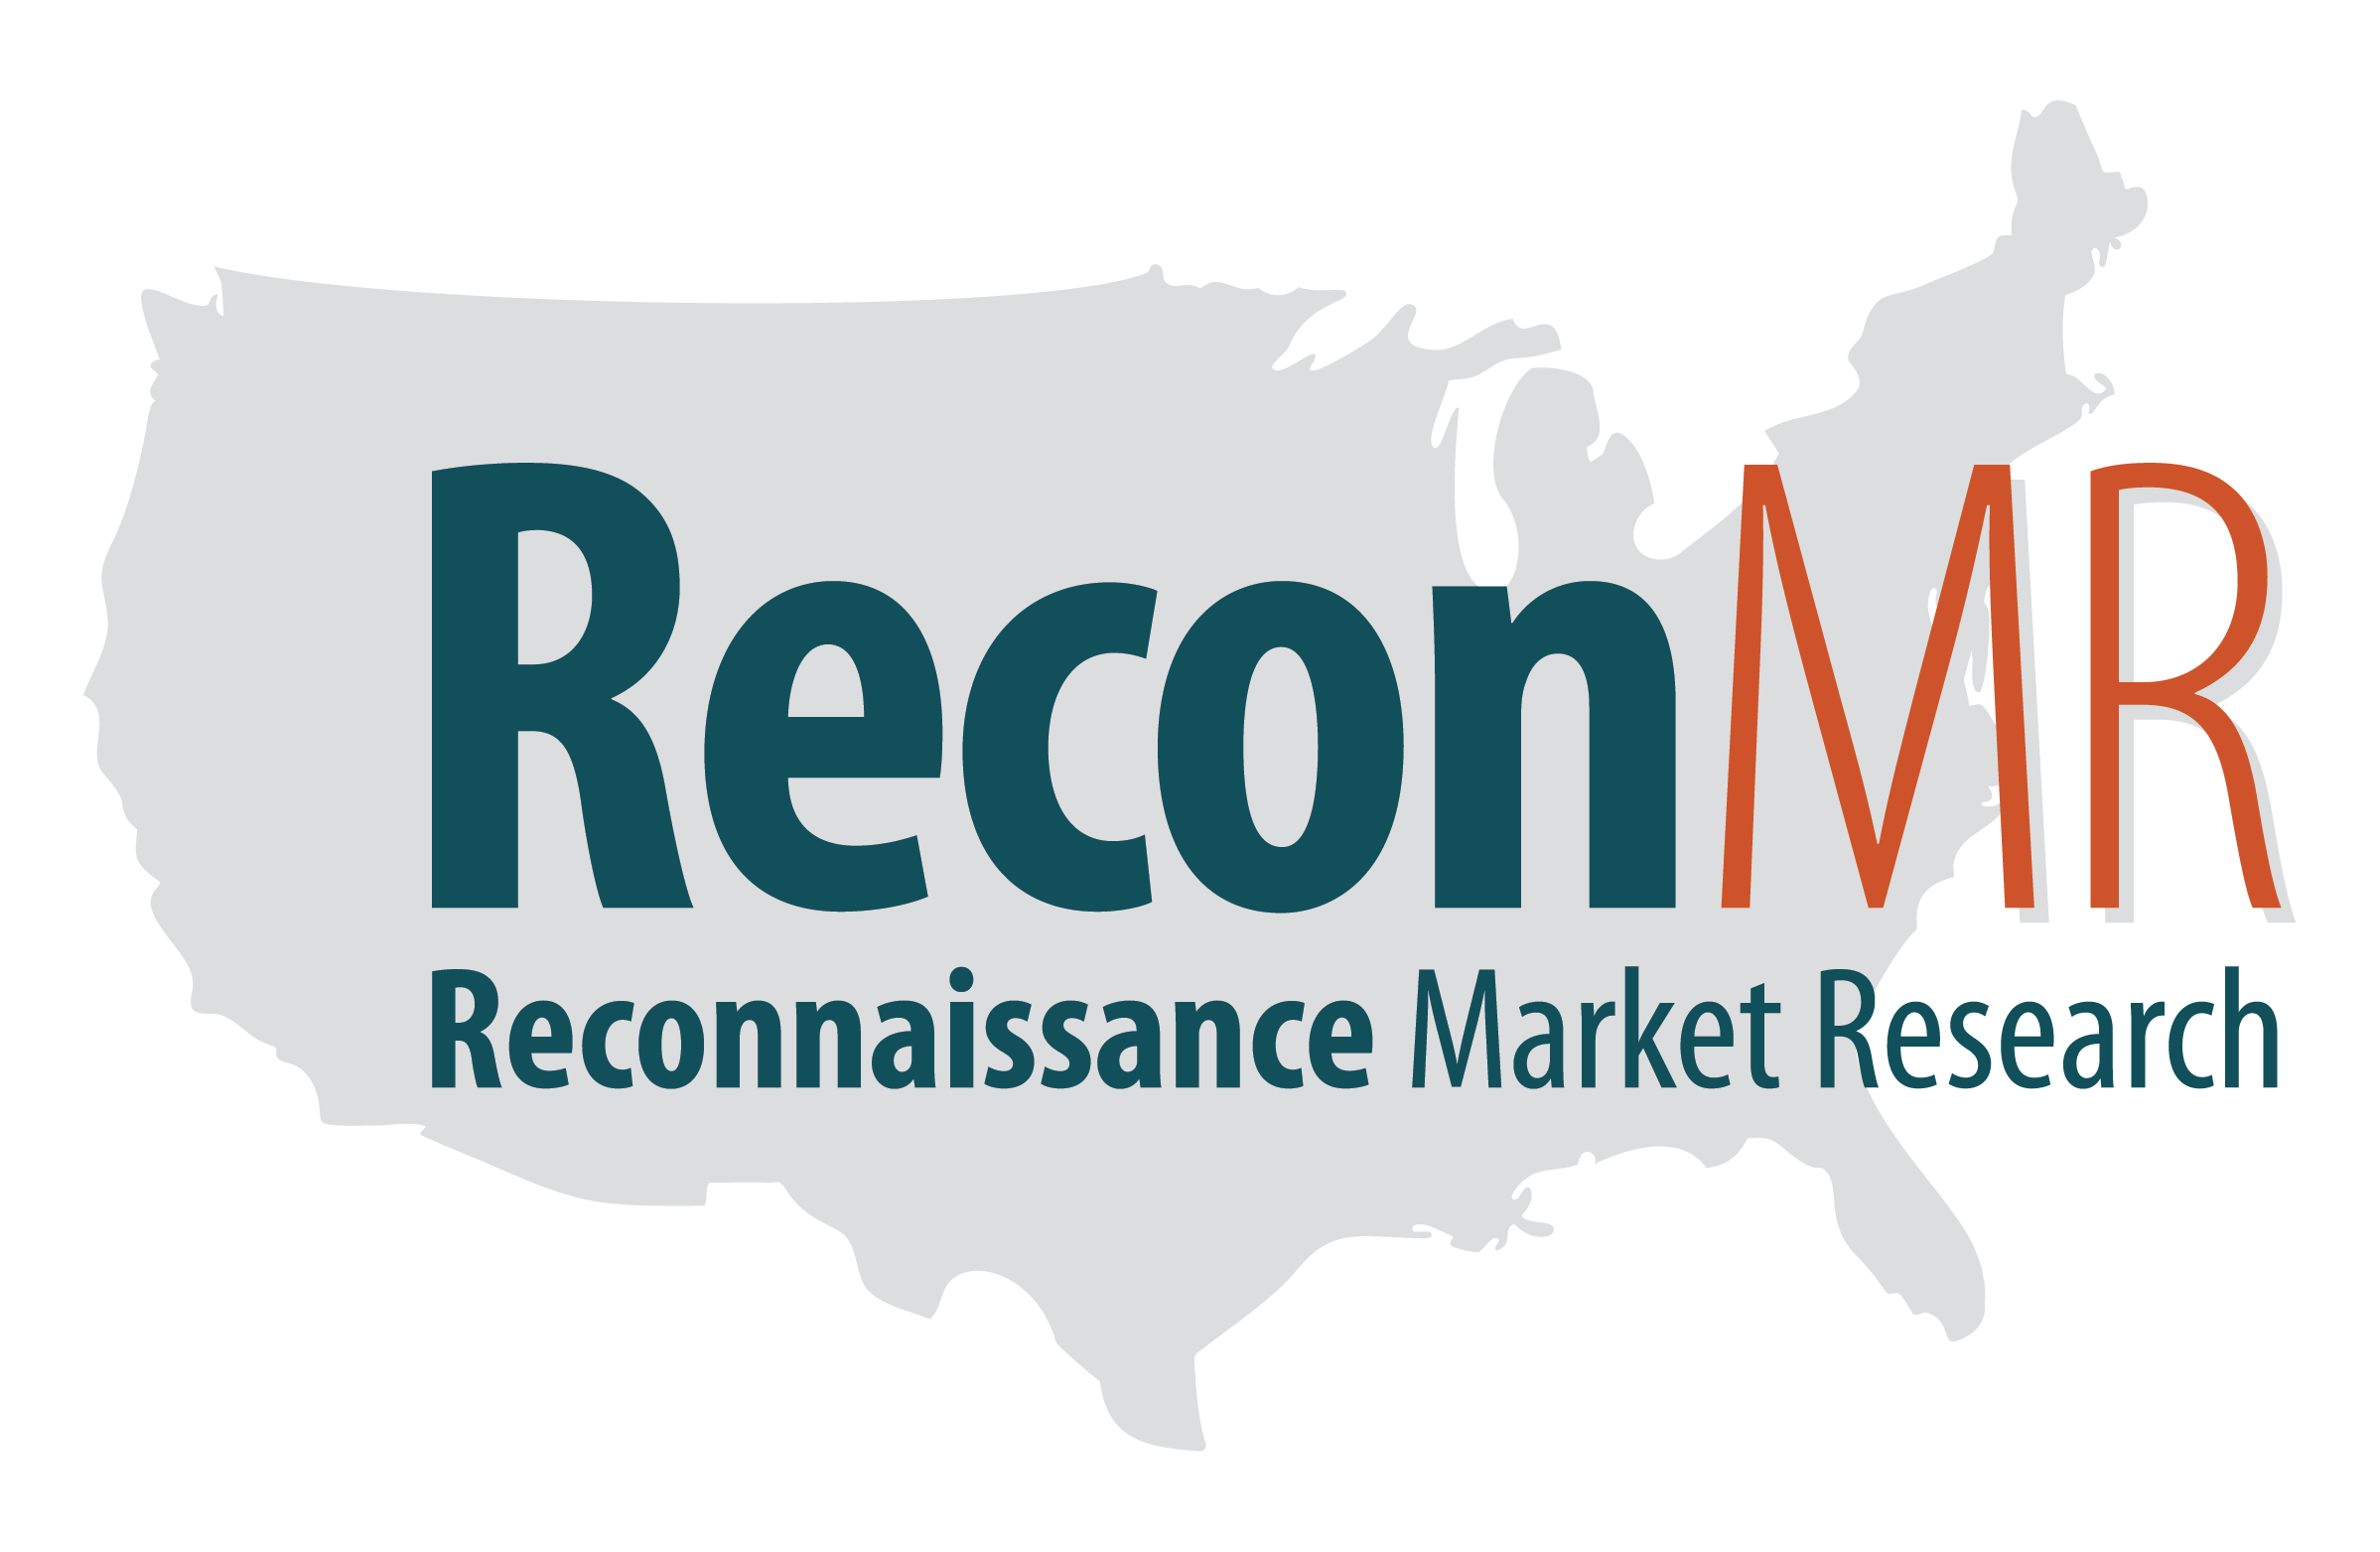 Reconnaissance Market Research